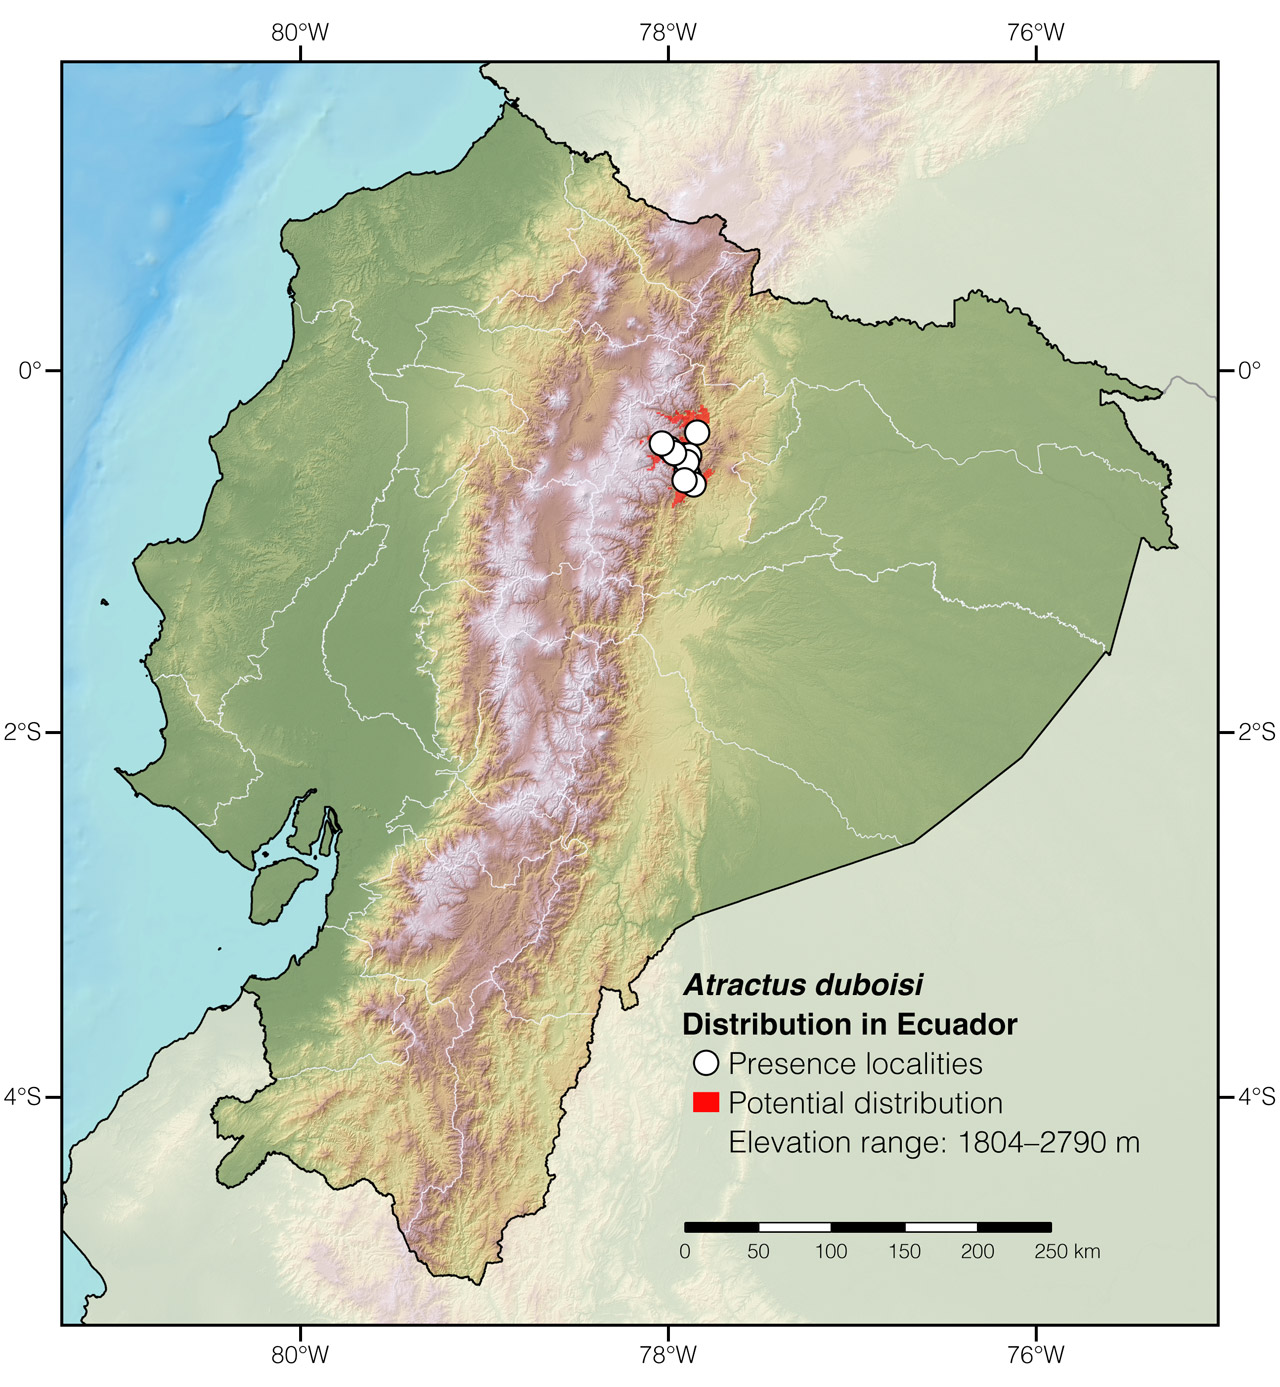 Distribution of Atractus duboisi in Ecuador